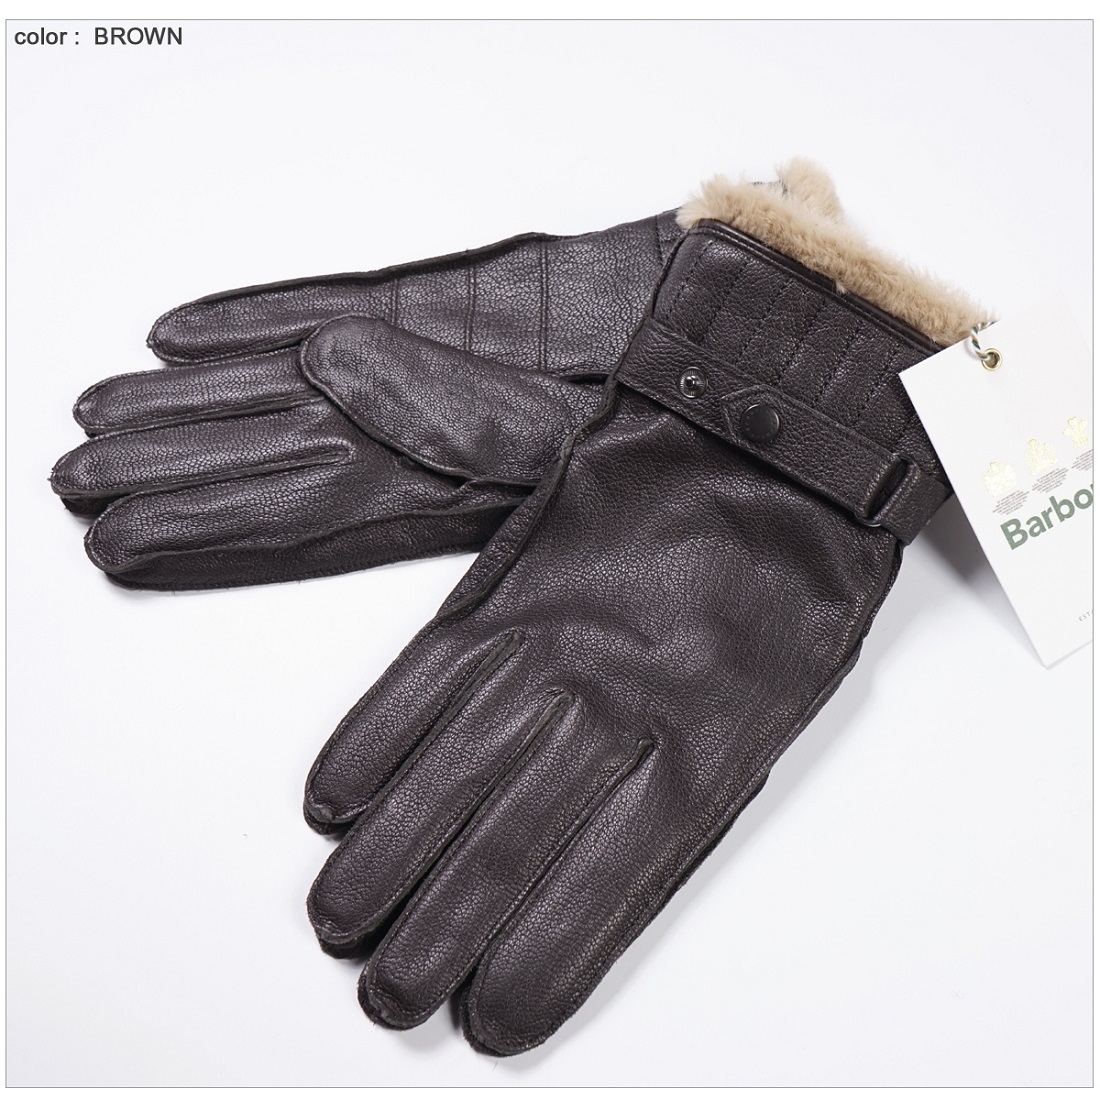 0円 有名な バーブァー レディース 手袋 アクセサリー Fur Trimmed Leather Gloves DARK BROWN